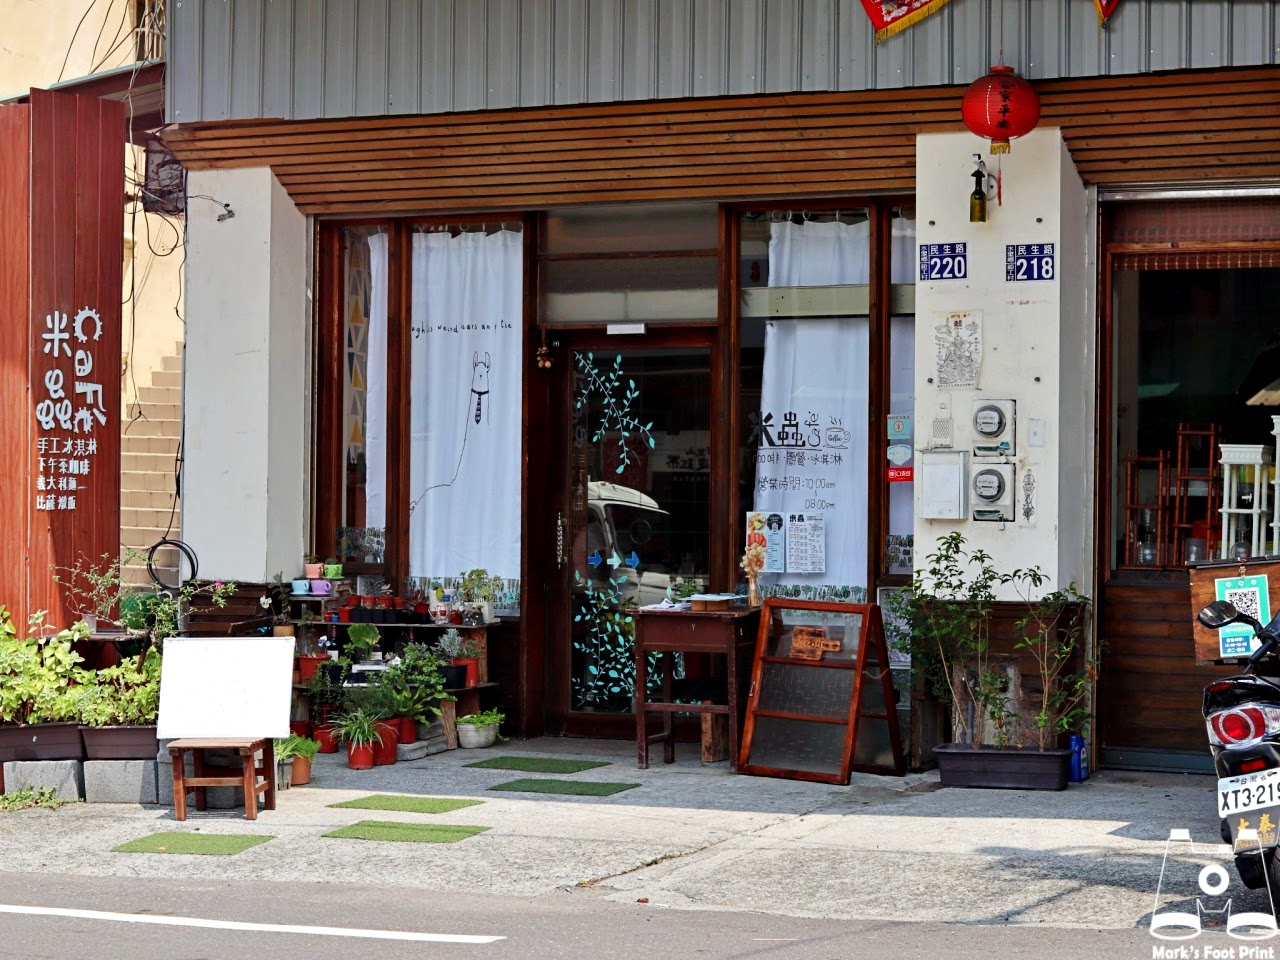 米蟲cafe’馬克的足跡marksfootprint